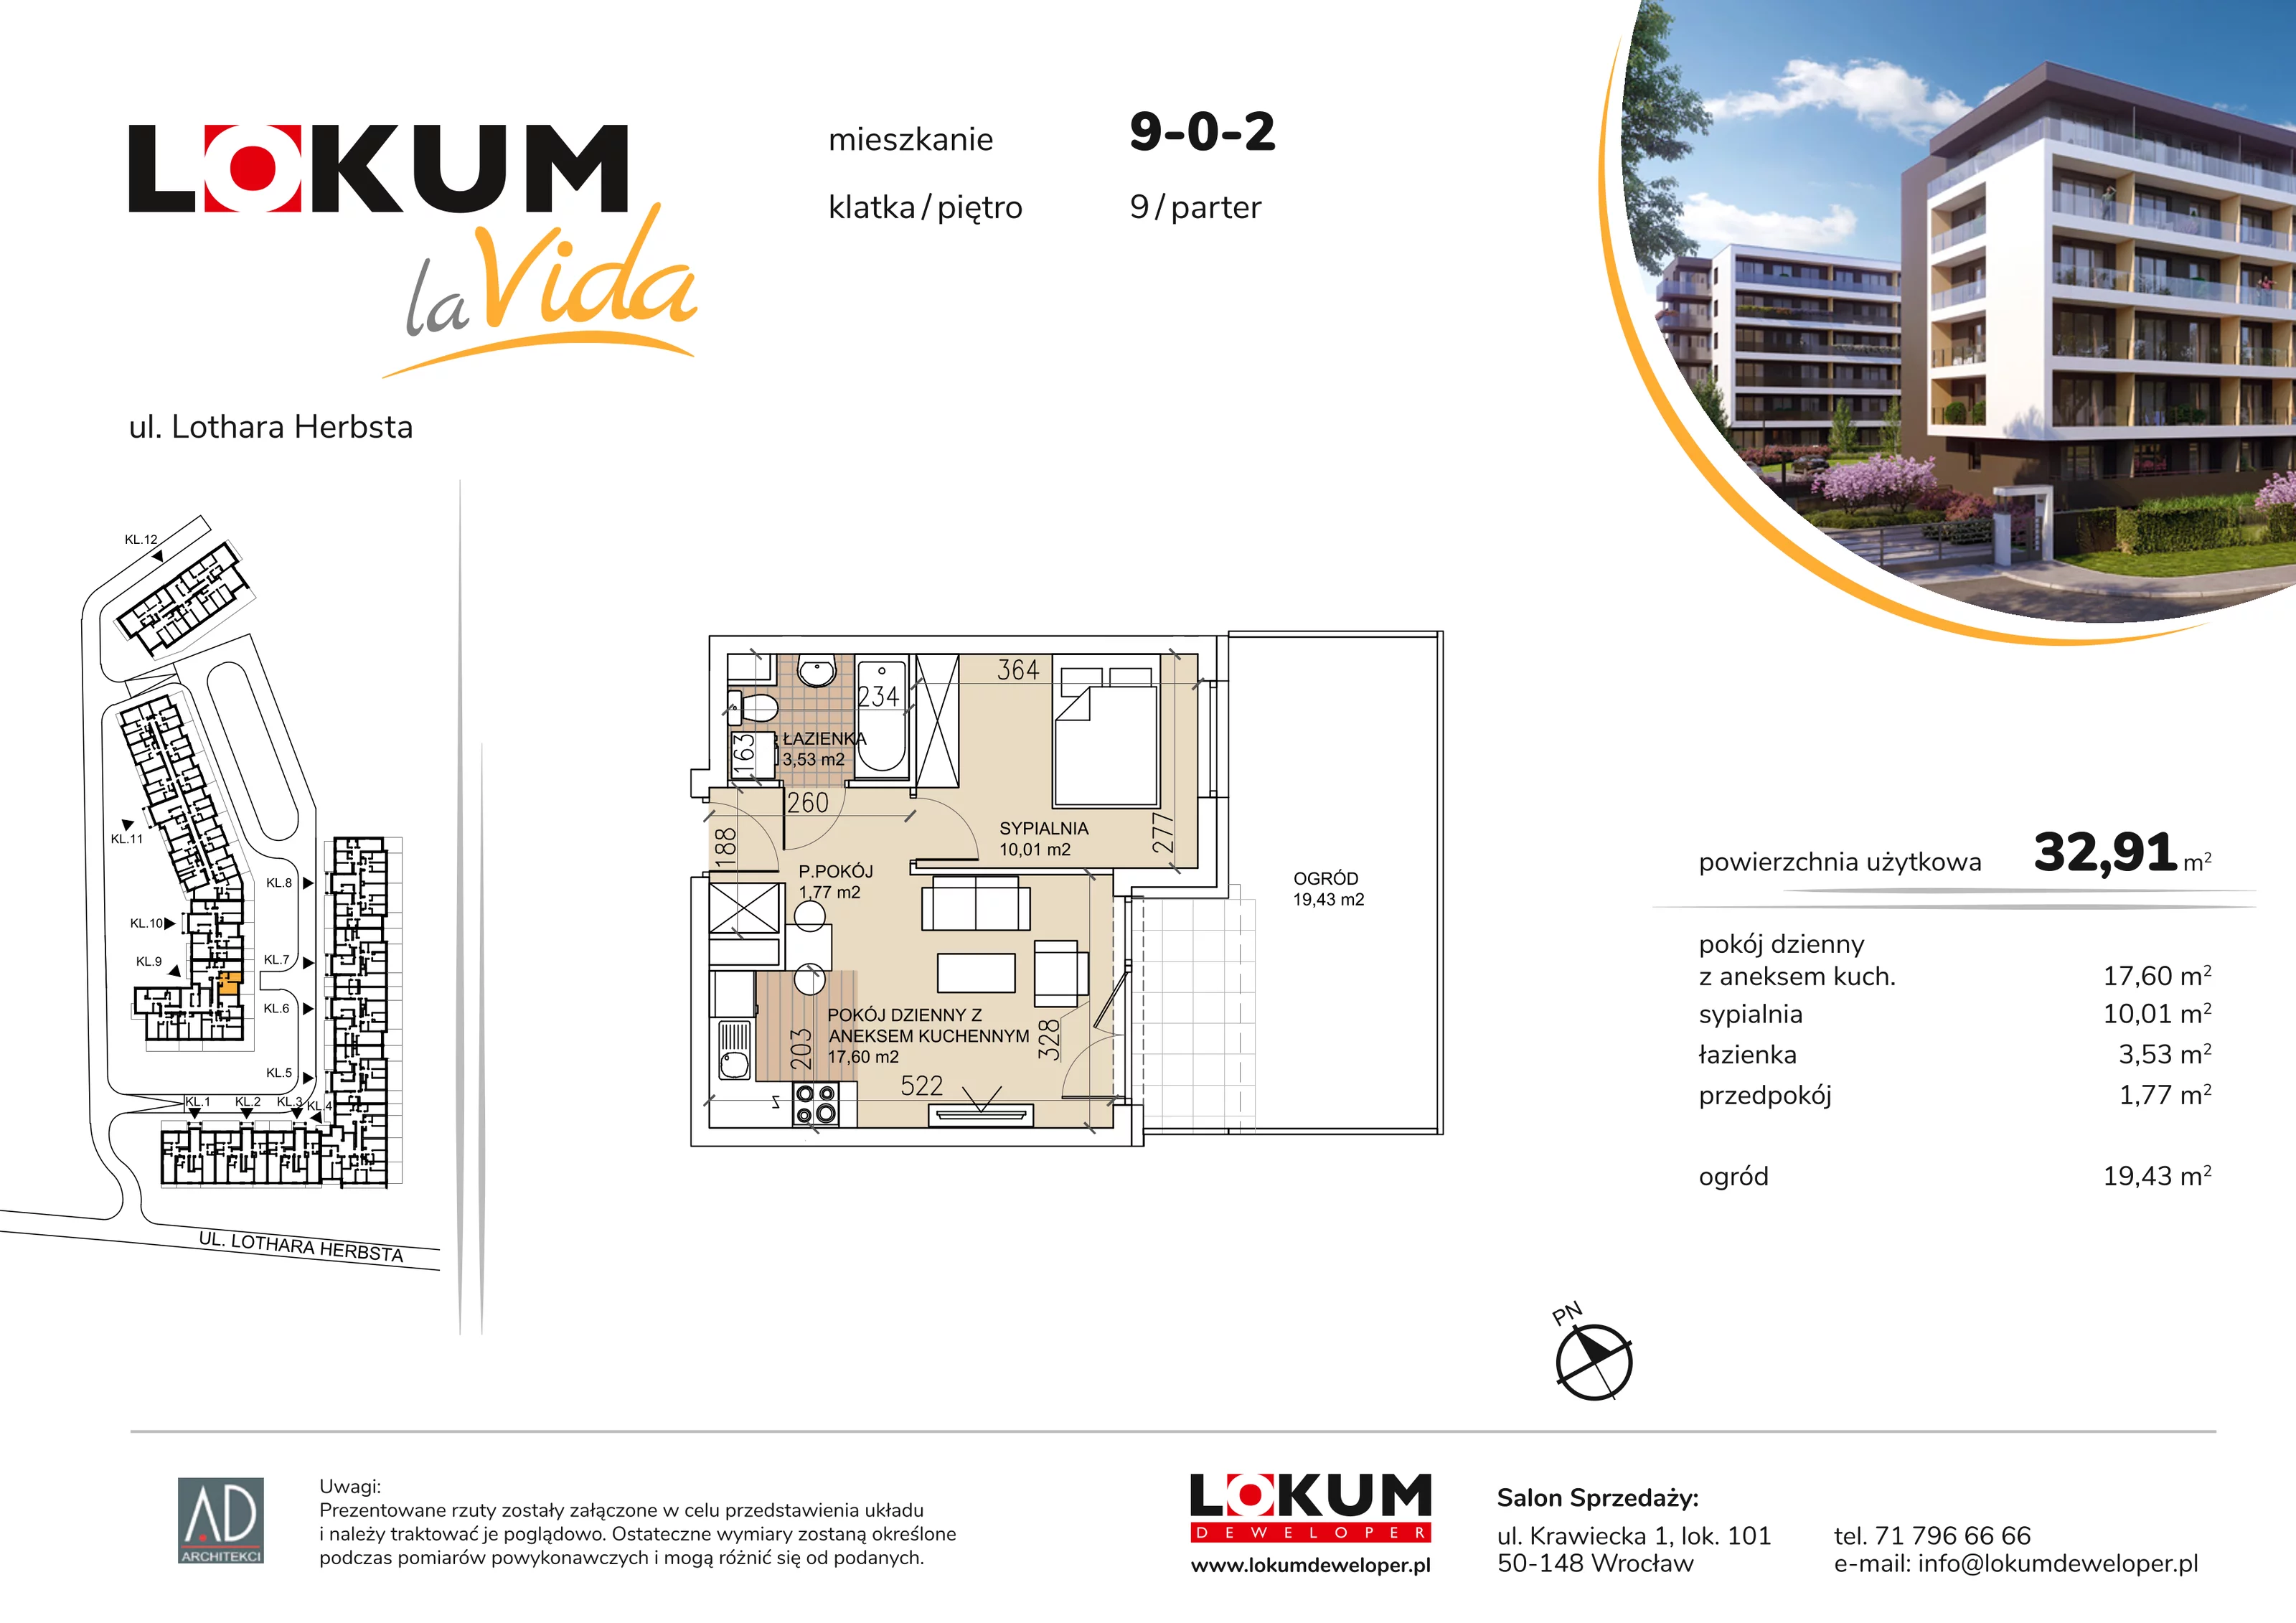 Mieszkanie 32,91 m², parter, oferta nr 9-0-2, Lokum la Vida, Wrocław, Sołtysowice, ul. Lothara Herbsta